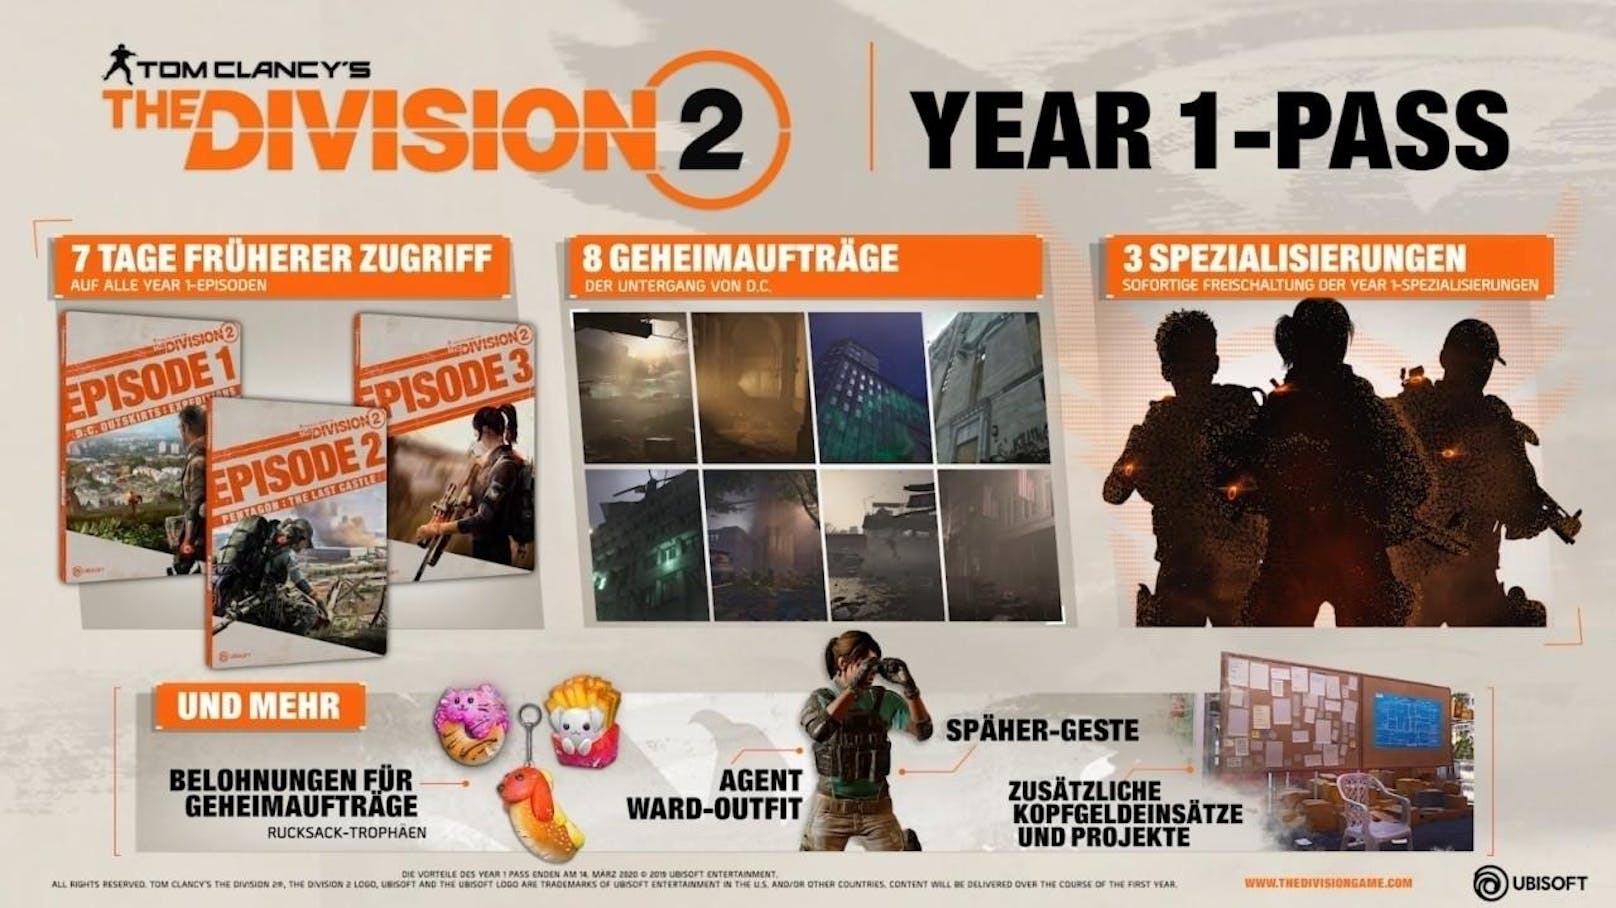 Ubisoft veröffentlicht ein neues Video zu den Post-Launch-Inhalten von Tom Clancy's The Division 2. Zusätzlich gibt es einen ersten Einblick in Operation "Dunkle Stunden", dem ersten 8-Spieler-Raid in der Geschichte von Tom Clancy's The Division. Das Spiel erscheint am 15. März 2019 weltweit für die Xbox One, die PlayStation 4 und den Windows PC.